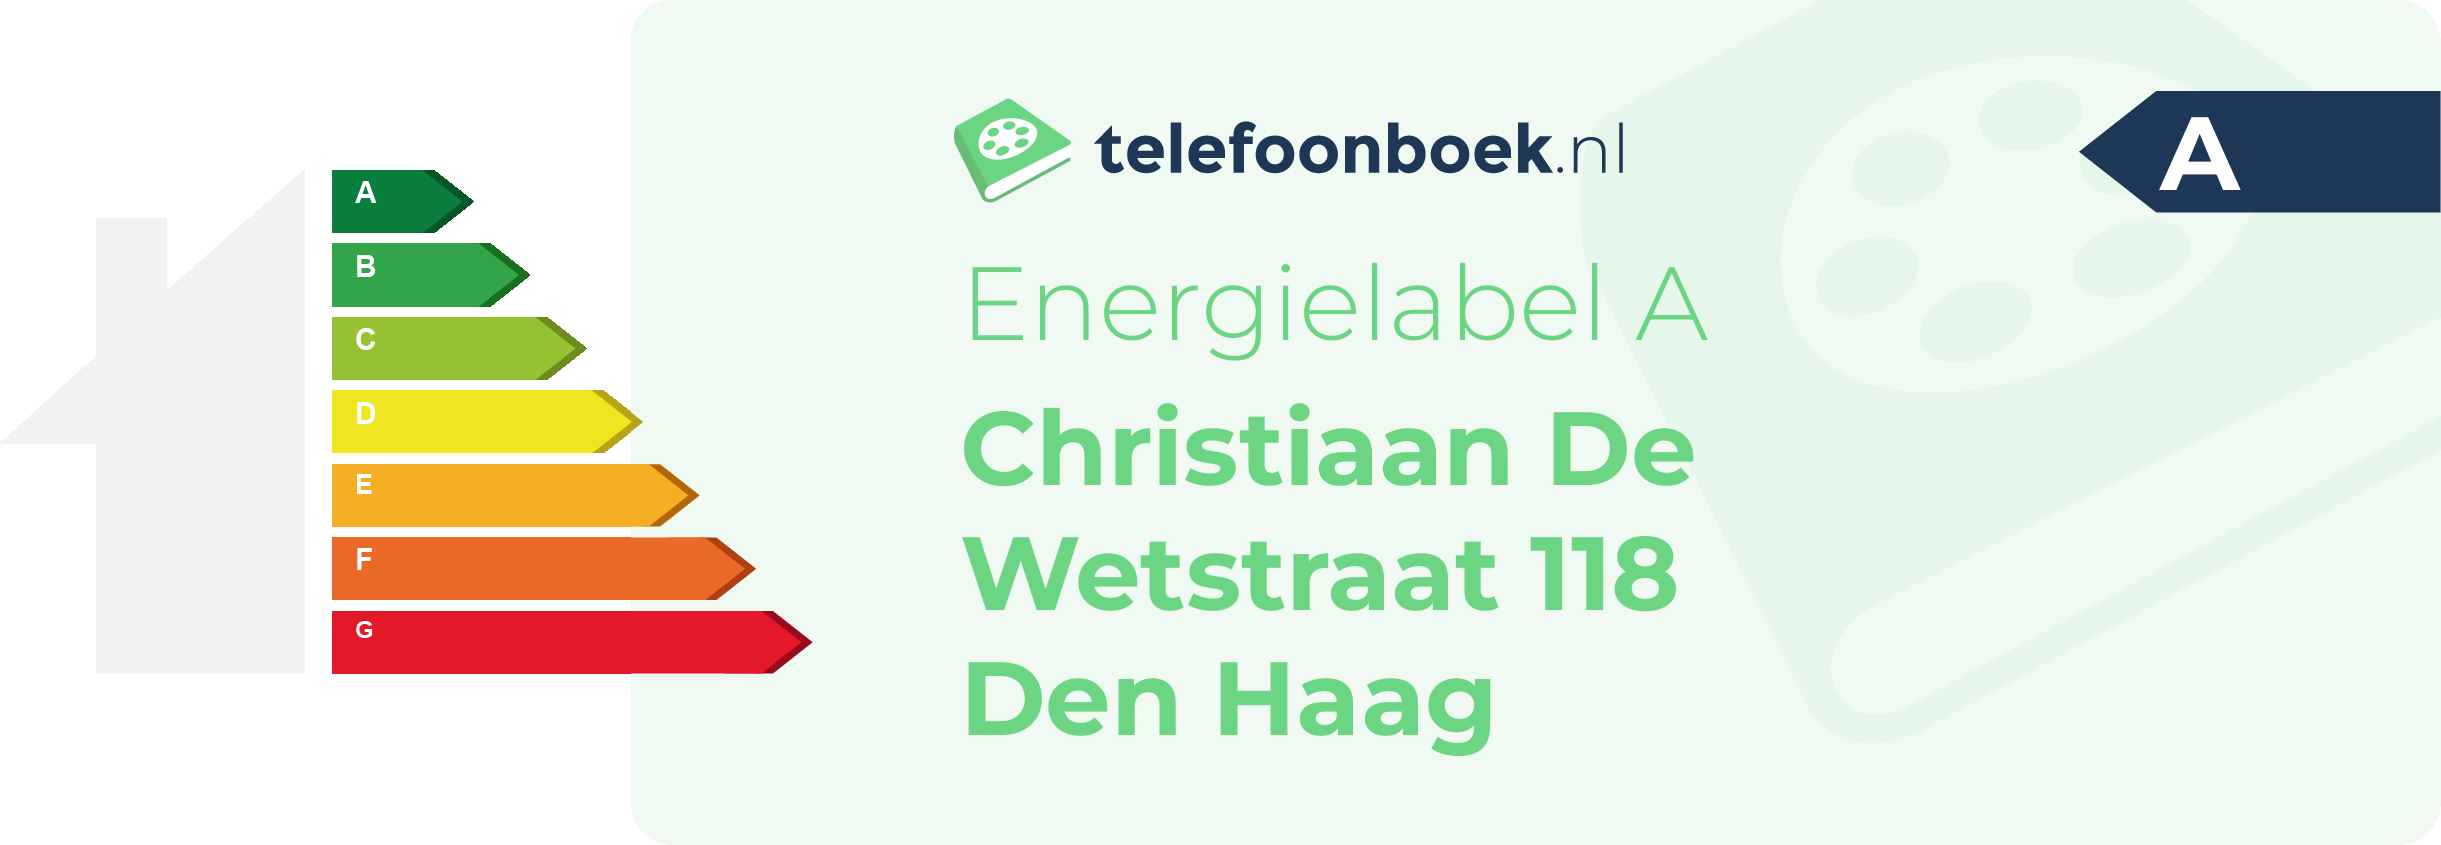 Energielabel Christiaan De Wetstraat 118 Den Haag